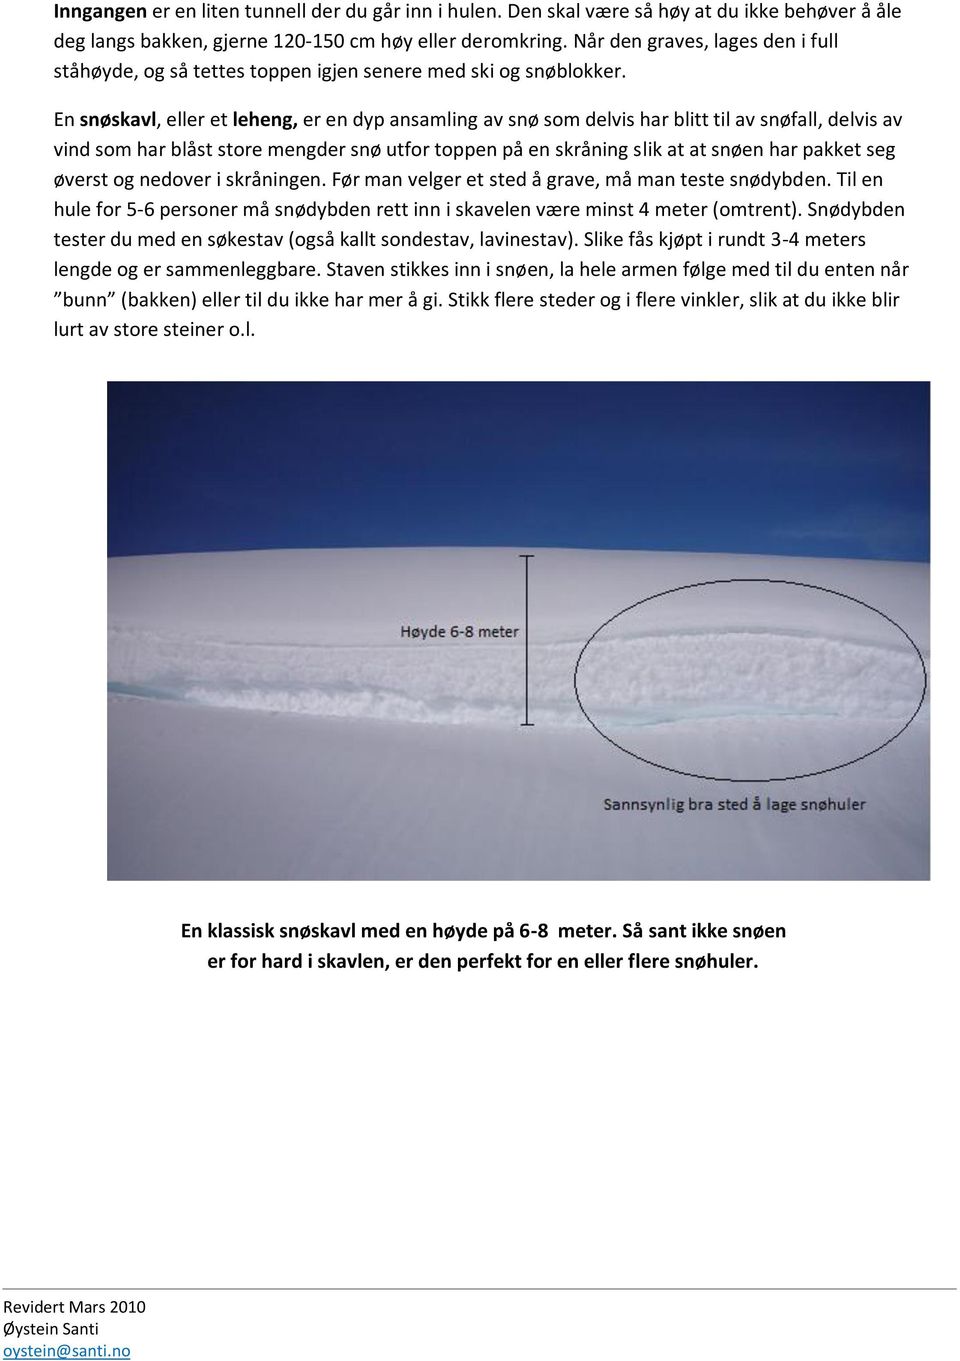 En snøskavl, eller et leheng, er en dyp ansamling av snø som delvis har blitt til av snøfall, delvis av vind som har blåst store mengder snø utfor toppen på en skråning slik at at snøen har pakket